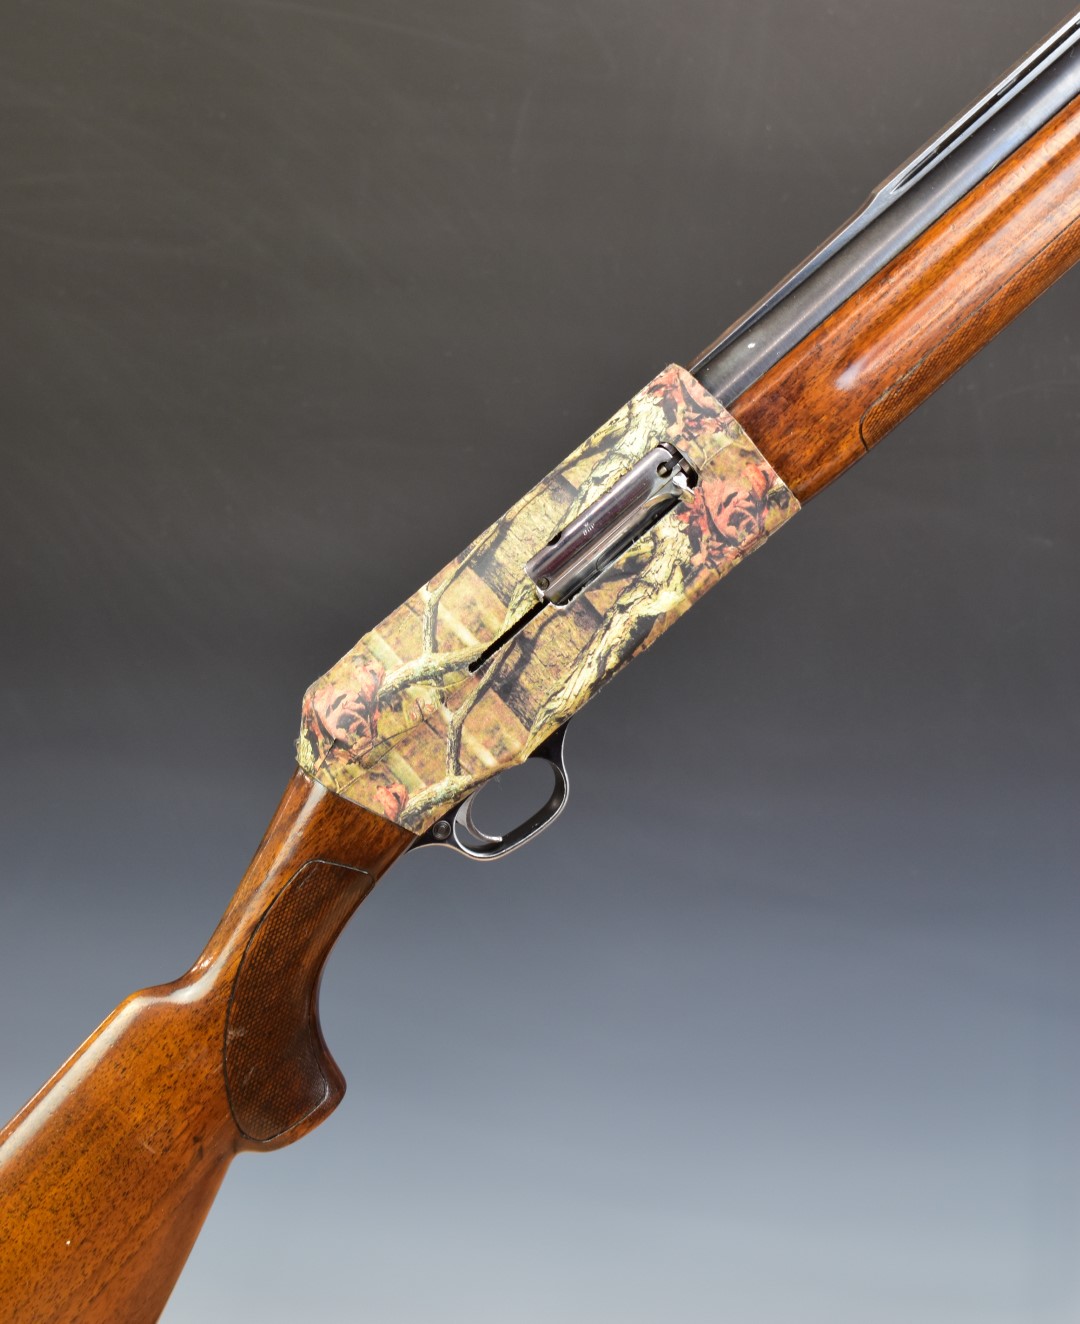 Luigi Franchi 12 bore three-shot semi-automatic shotgun with camouflage lock, chequered semi-